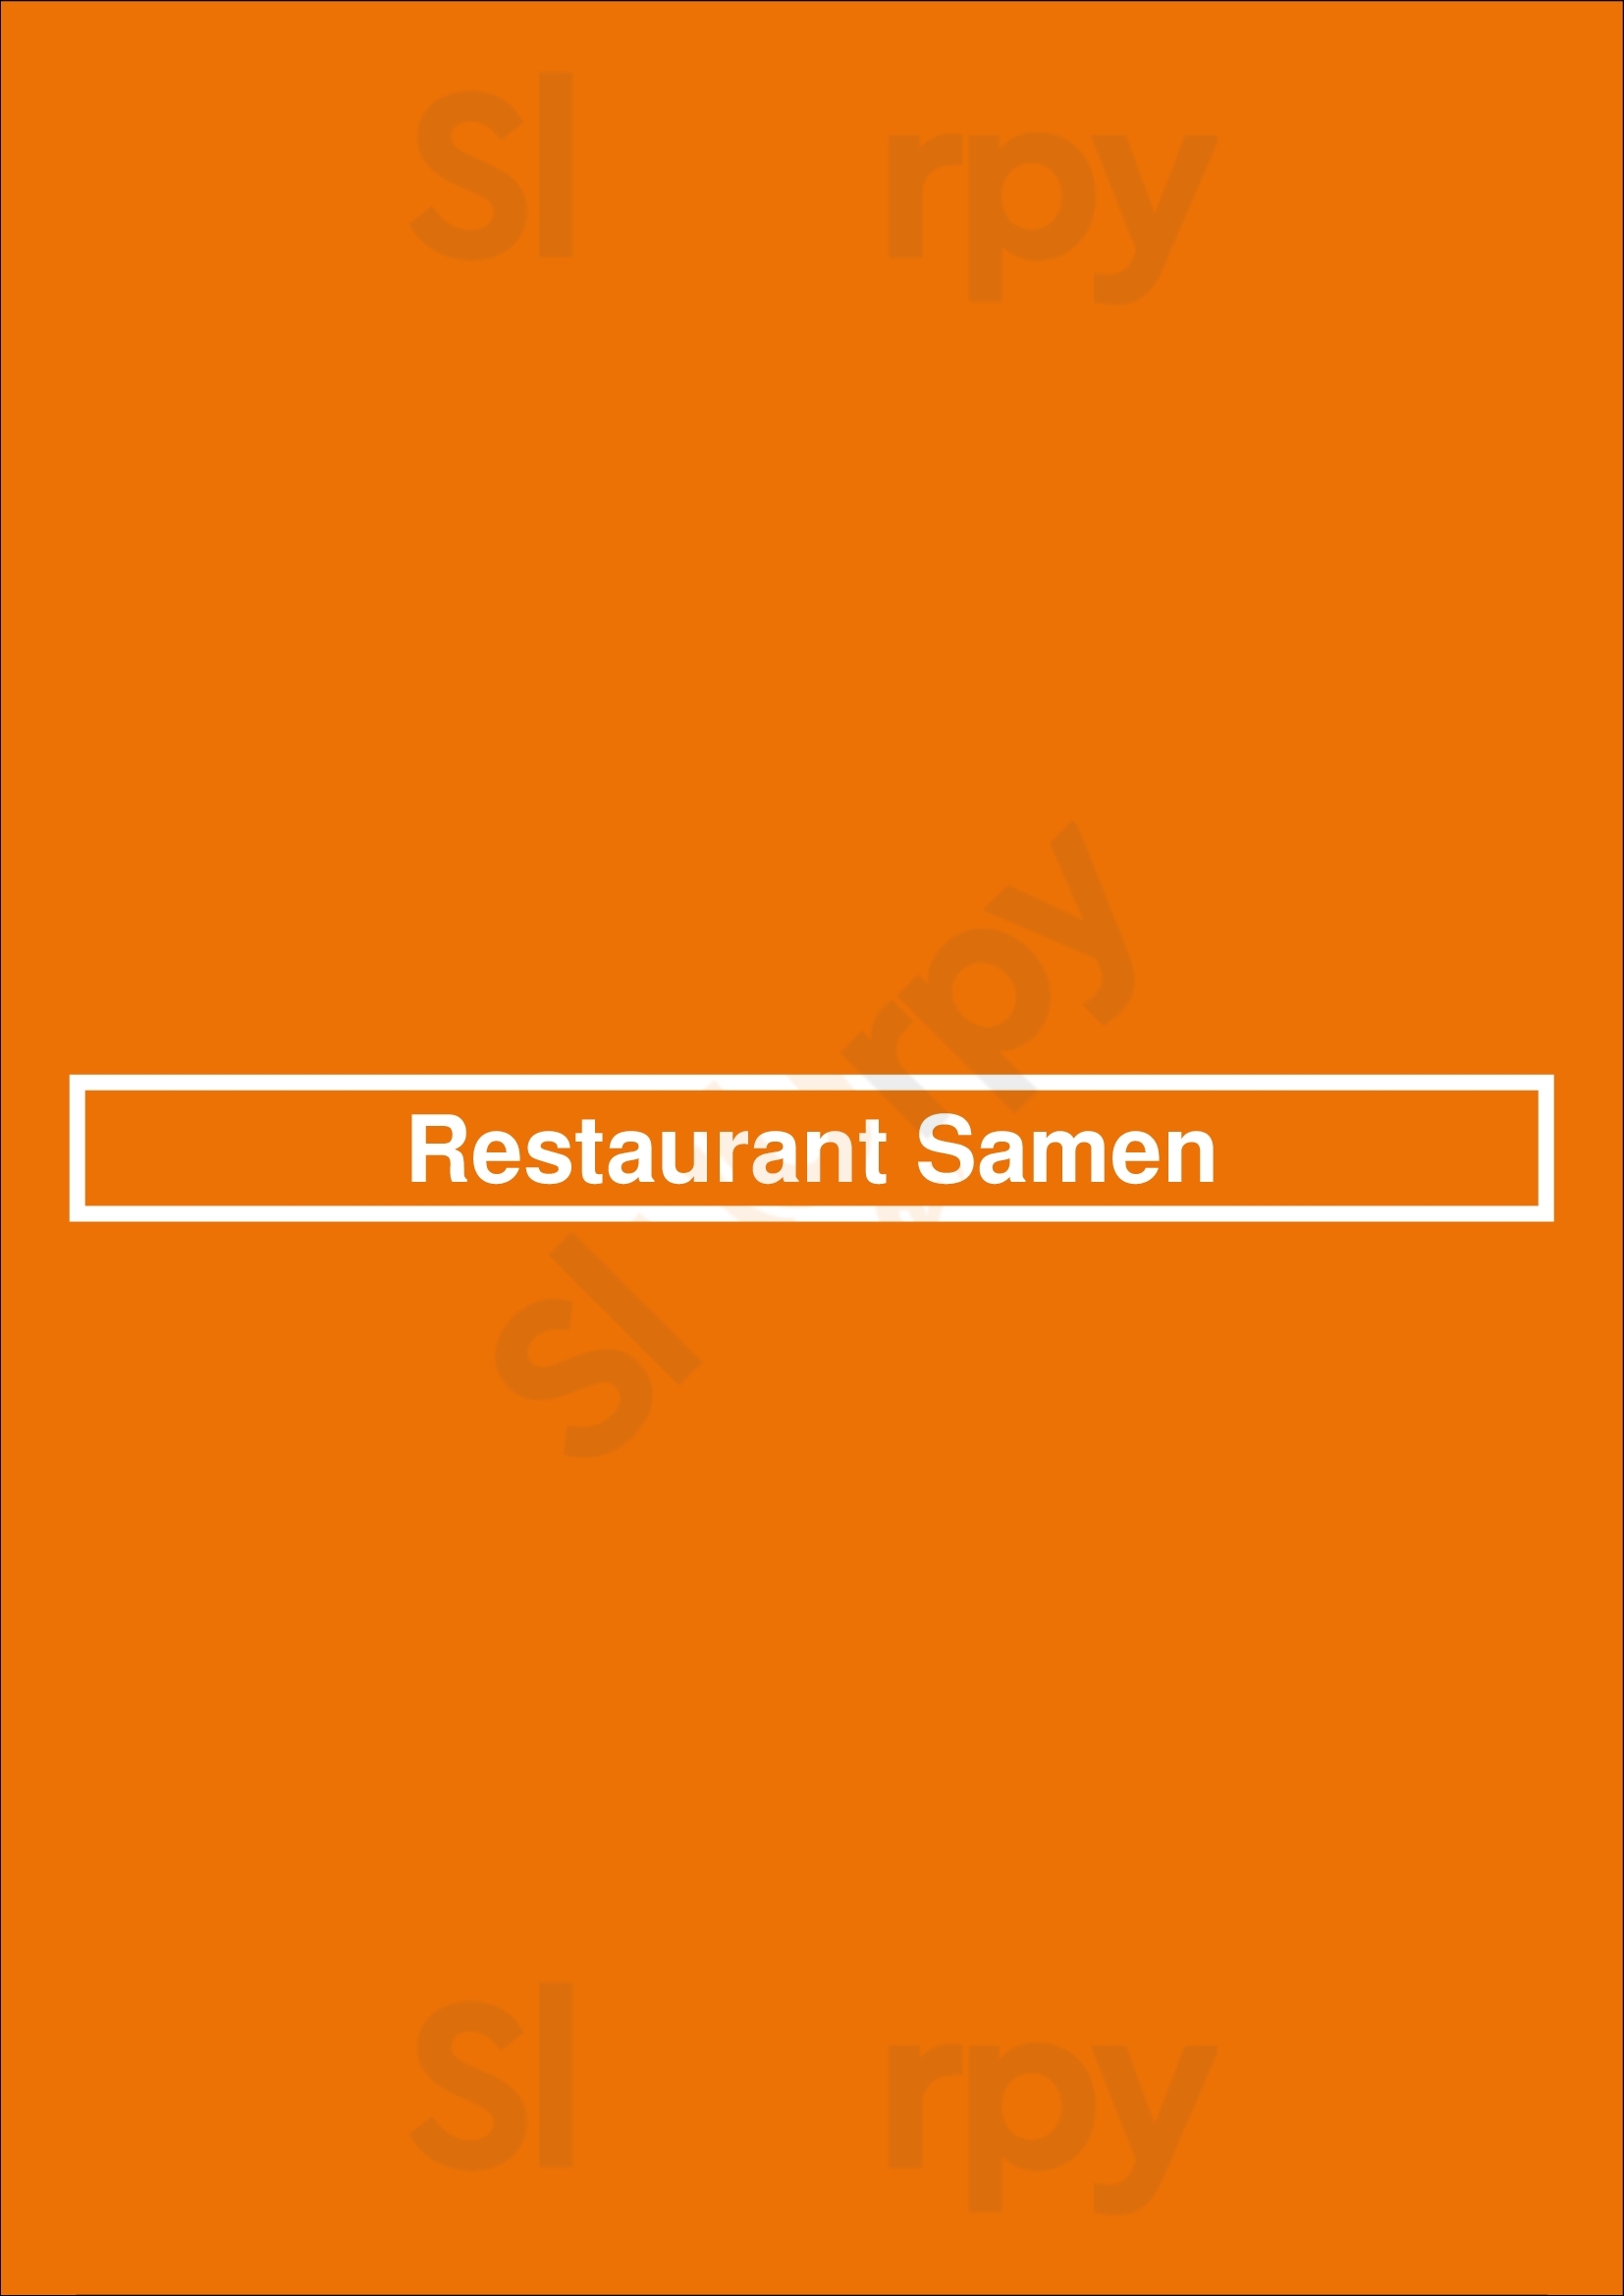 Restaurant Samen Wijchen Menu - 1